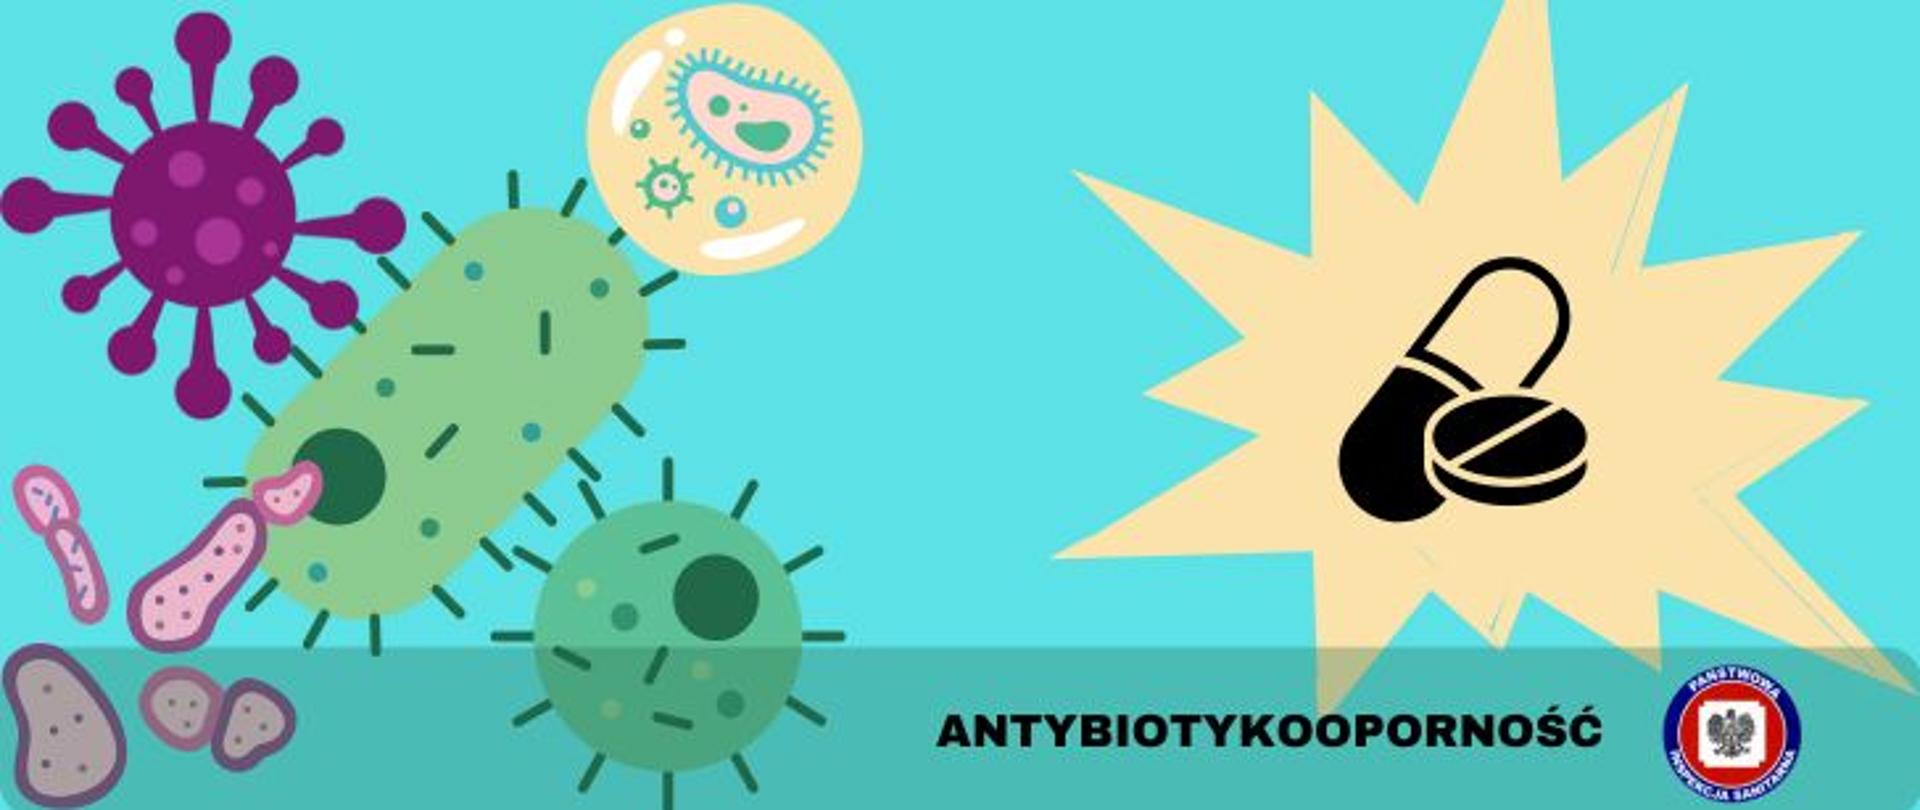 Na turkusowym tle, po lewej różnego rodzaju bakterie przedstawione w sposób graficzny i kolorowy, po prawej dwie tabletki antybiotyku (pastylka i kapsułka) w żółtej, poświacie w stylu komiksowym. Na dole półprzeźroczysty pasek z ciemnym napisem antybiotykooporność, z jego prawej strony logo Państwowej Inspekcji Sanitarnej. 